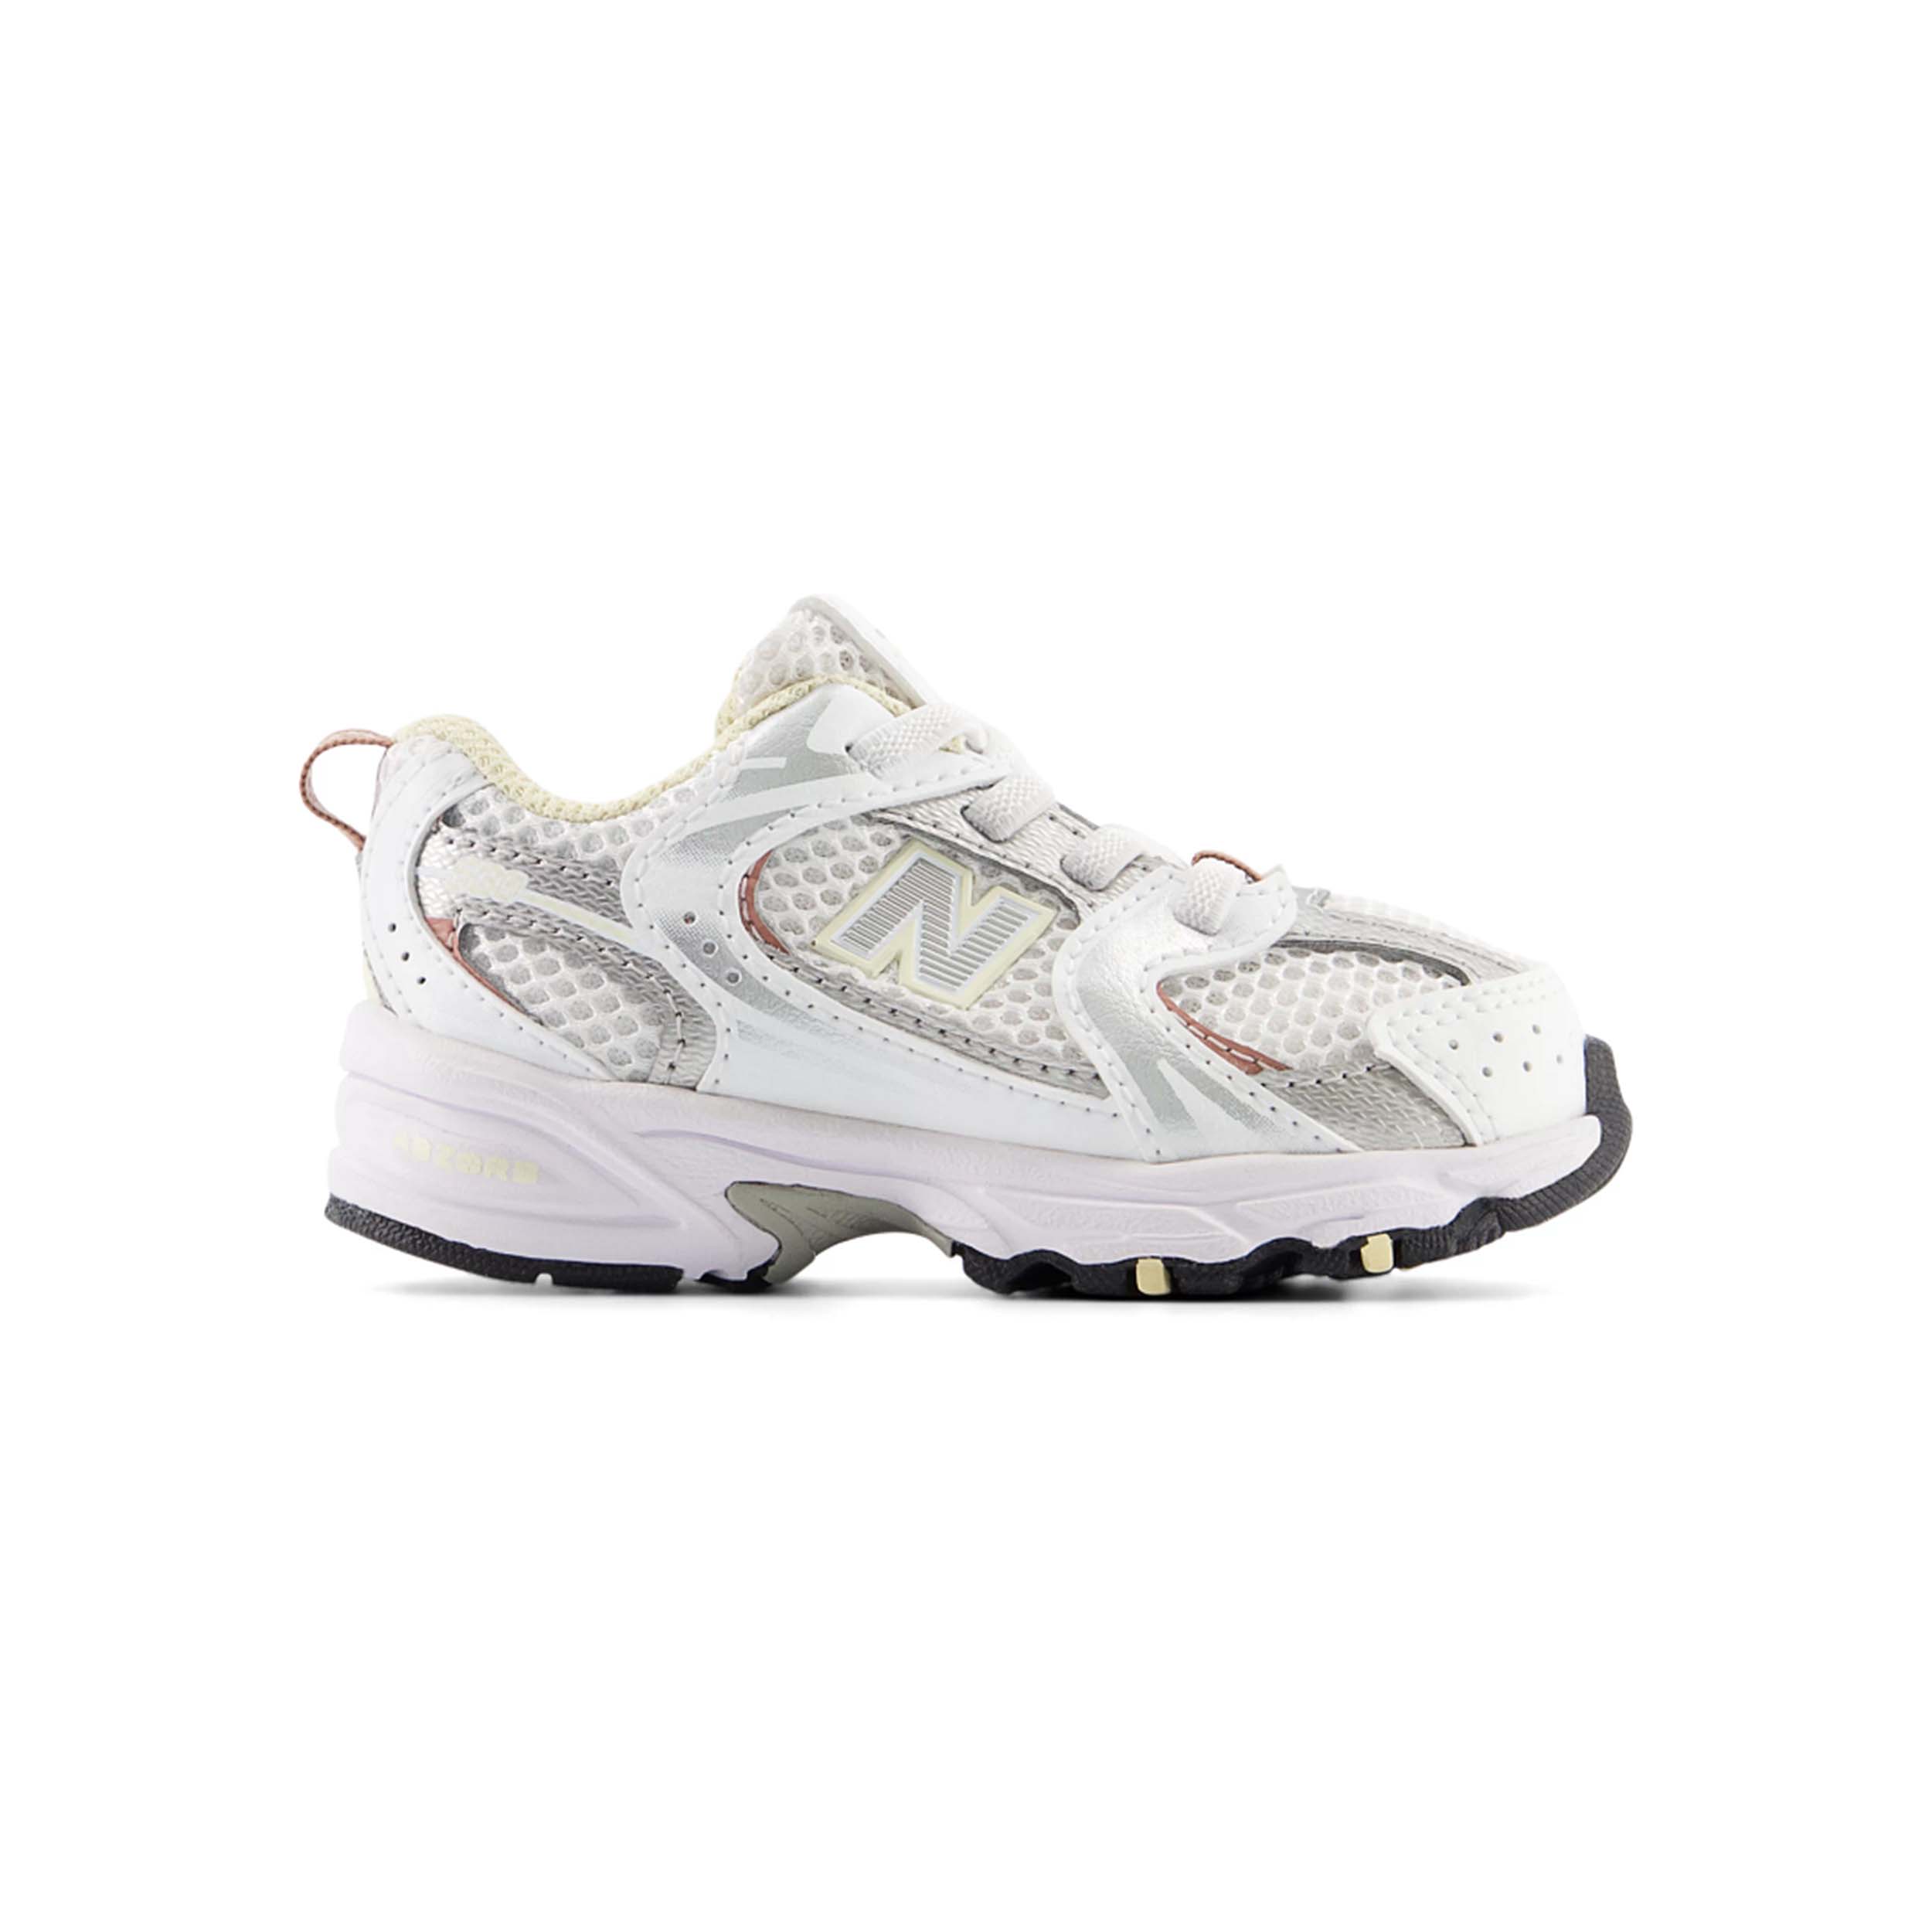 New Balance 530 Sneaker White/Calcium